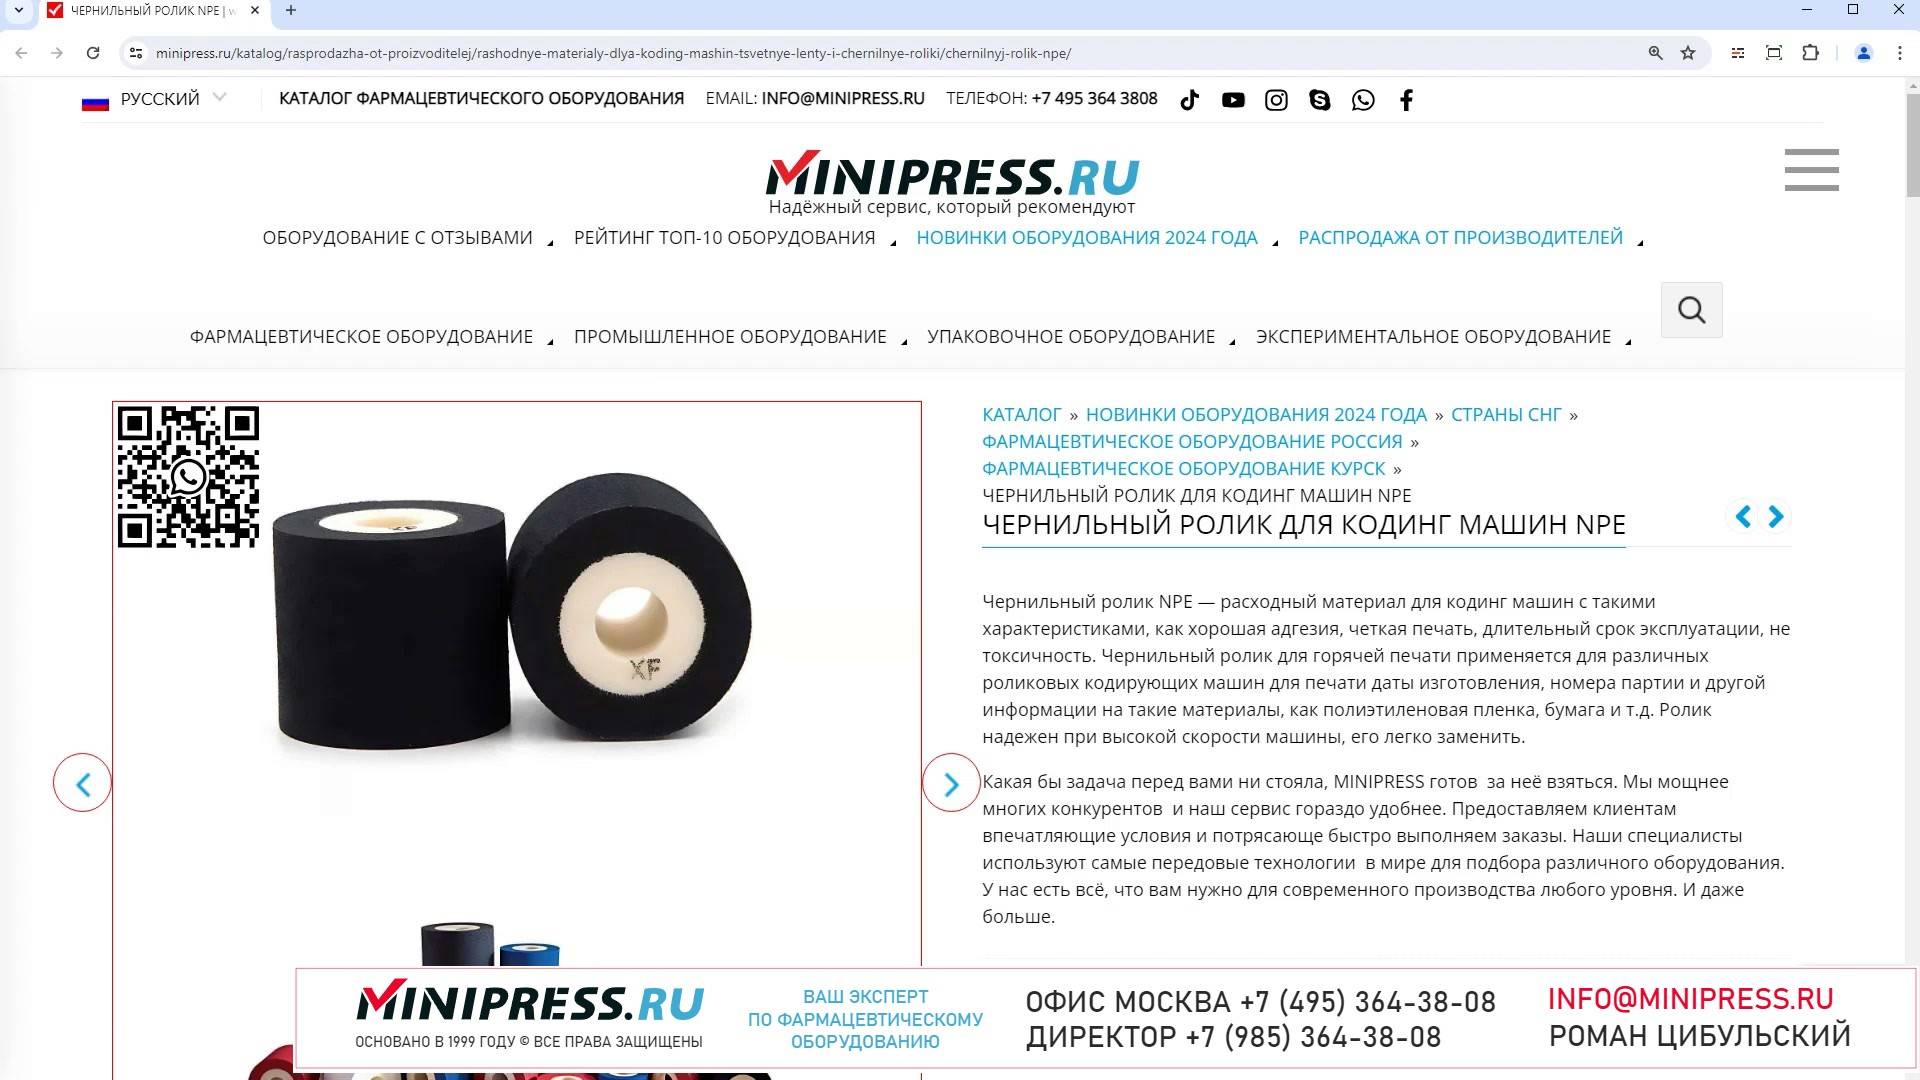 Minipress.ru Чернильный ролик для кодинг машин NPE